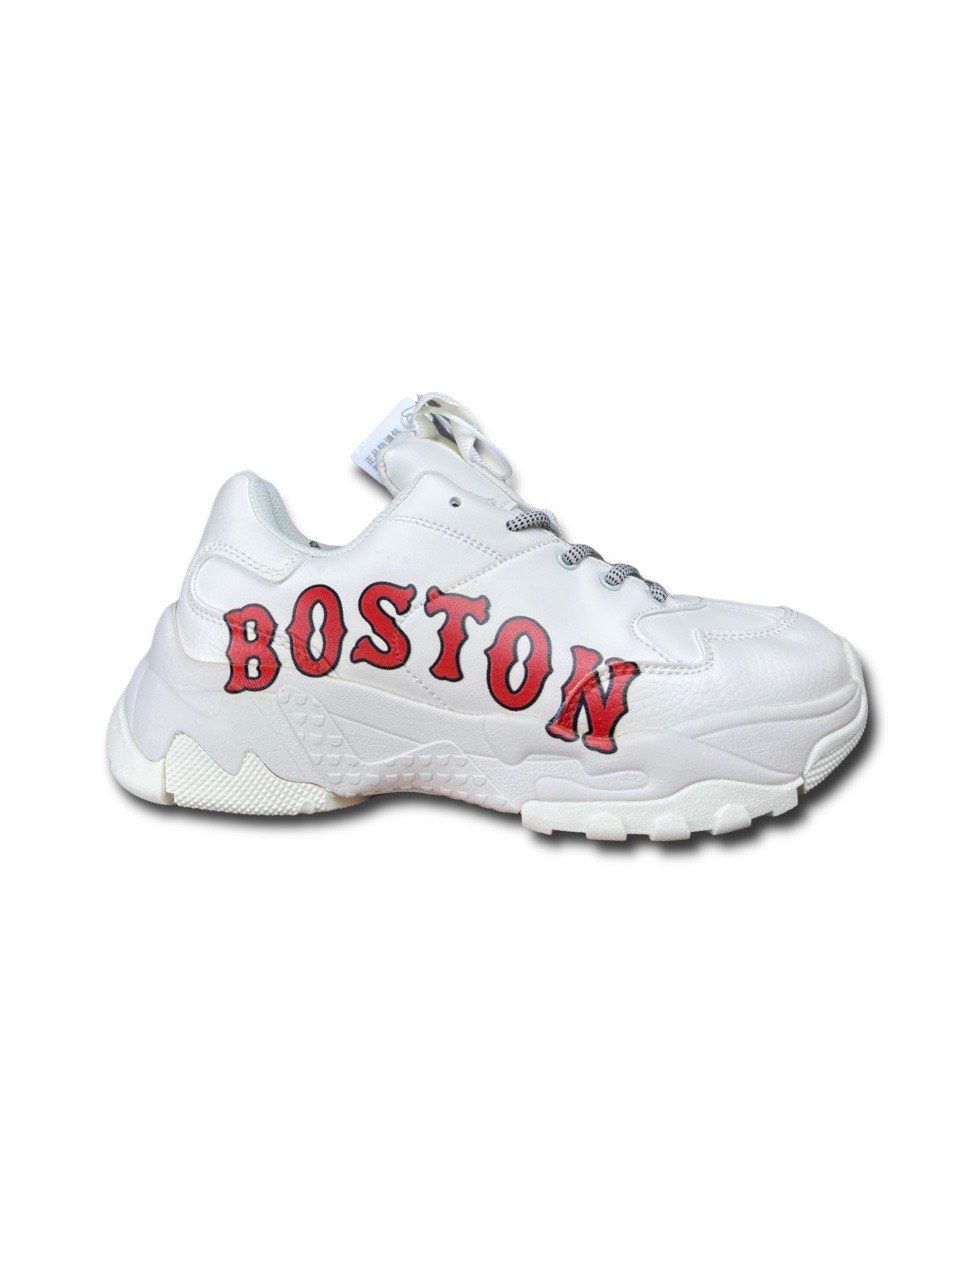 Giày MLB Boston Red Sox Trắng Đỏ